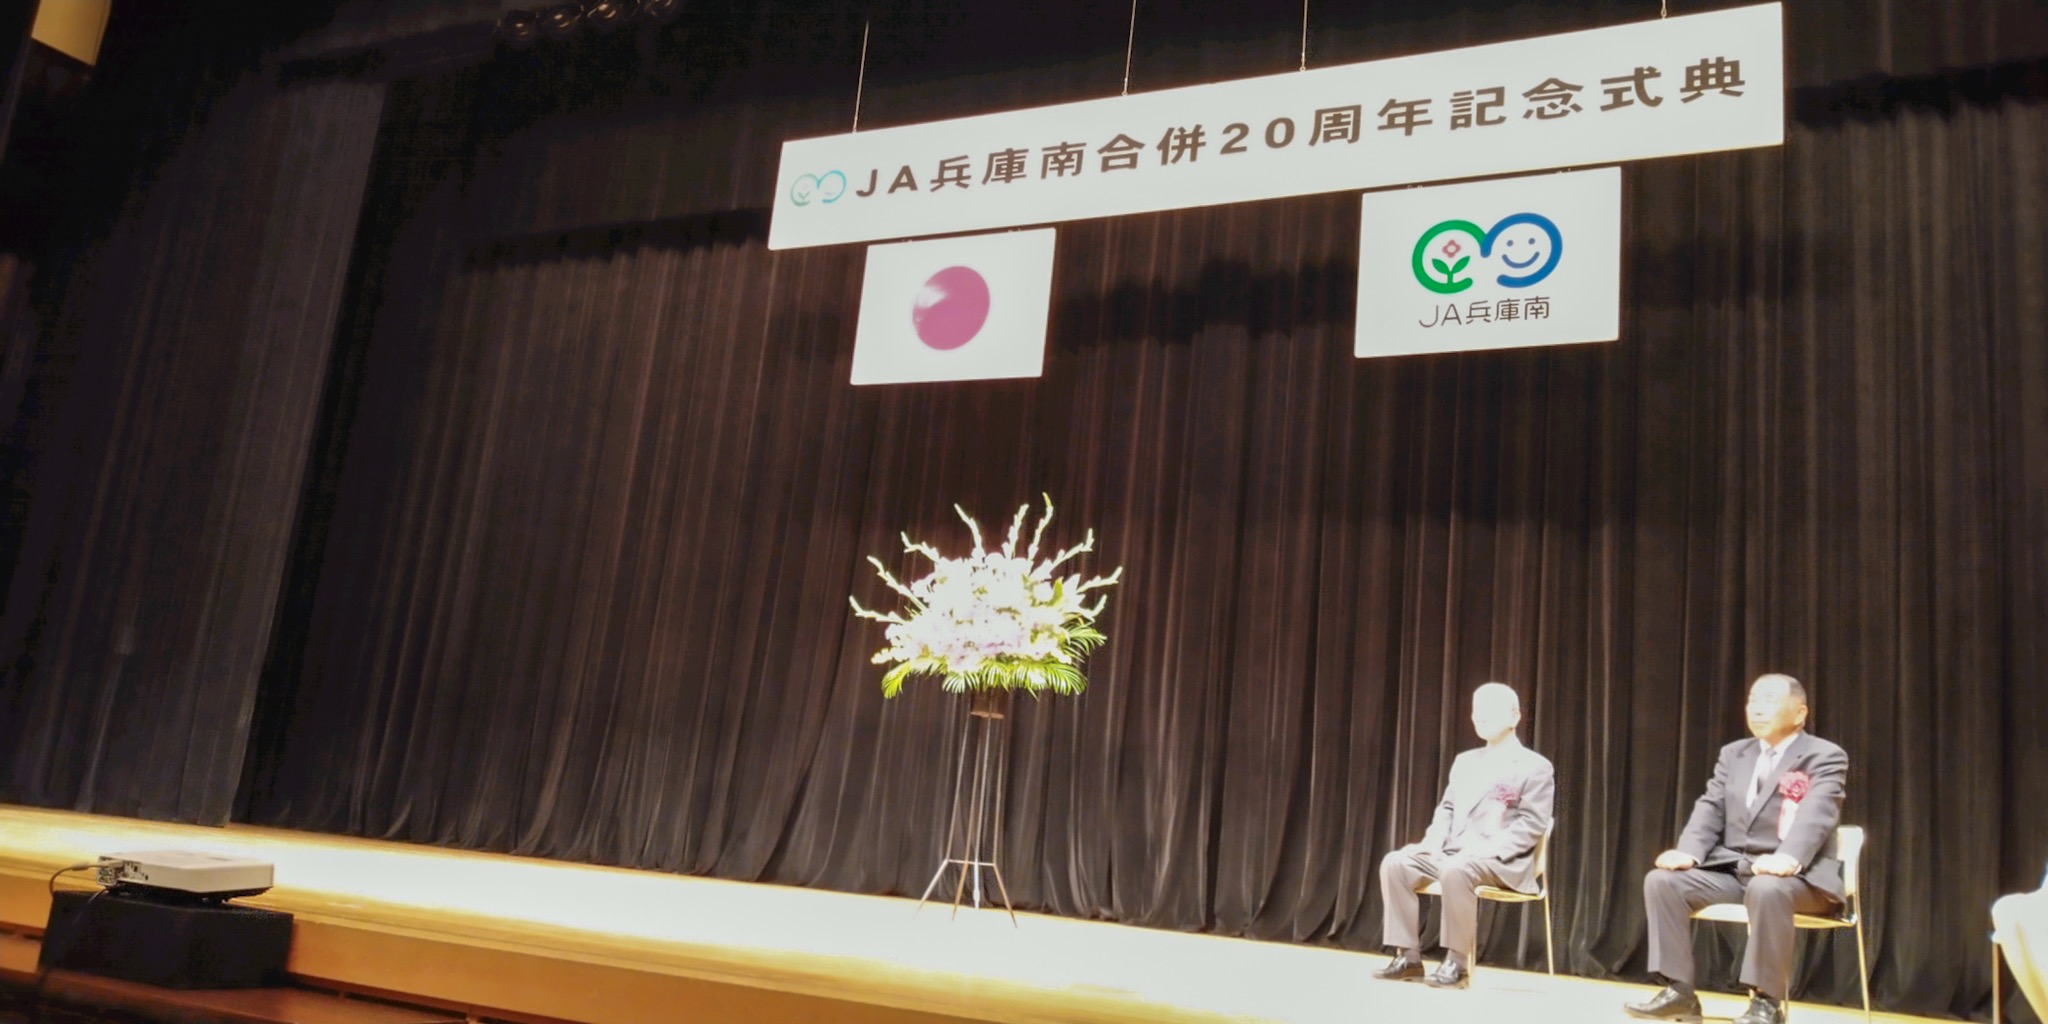 2019年11月30日(土) JA兵庫南合併２０周年記念式典に出席